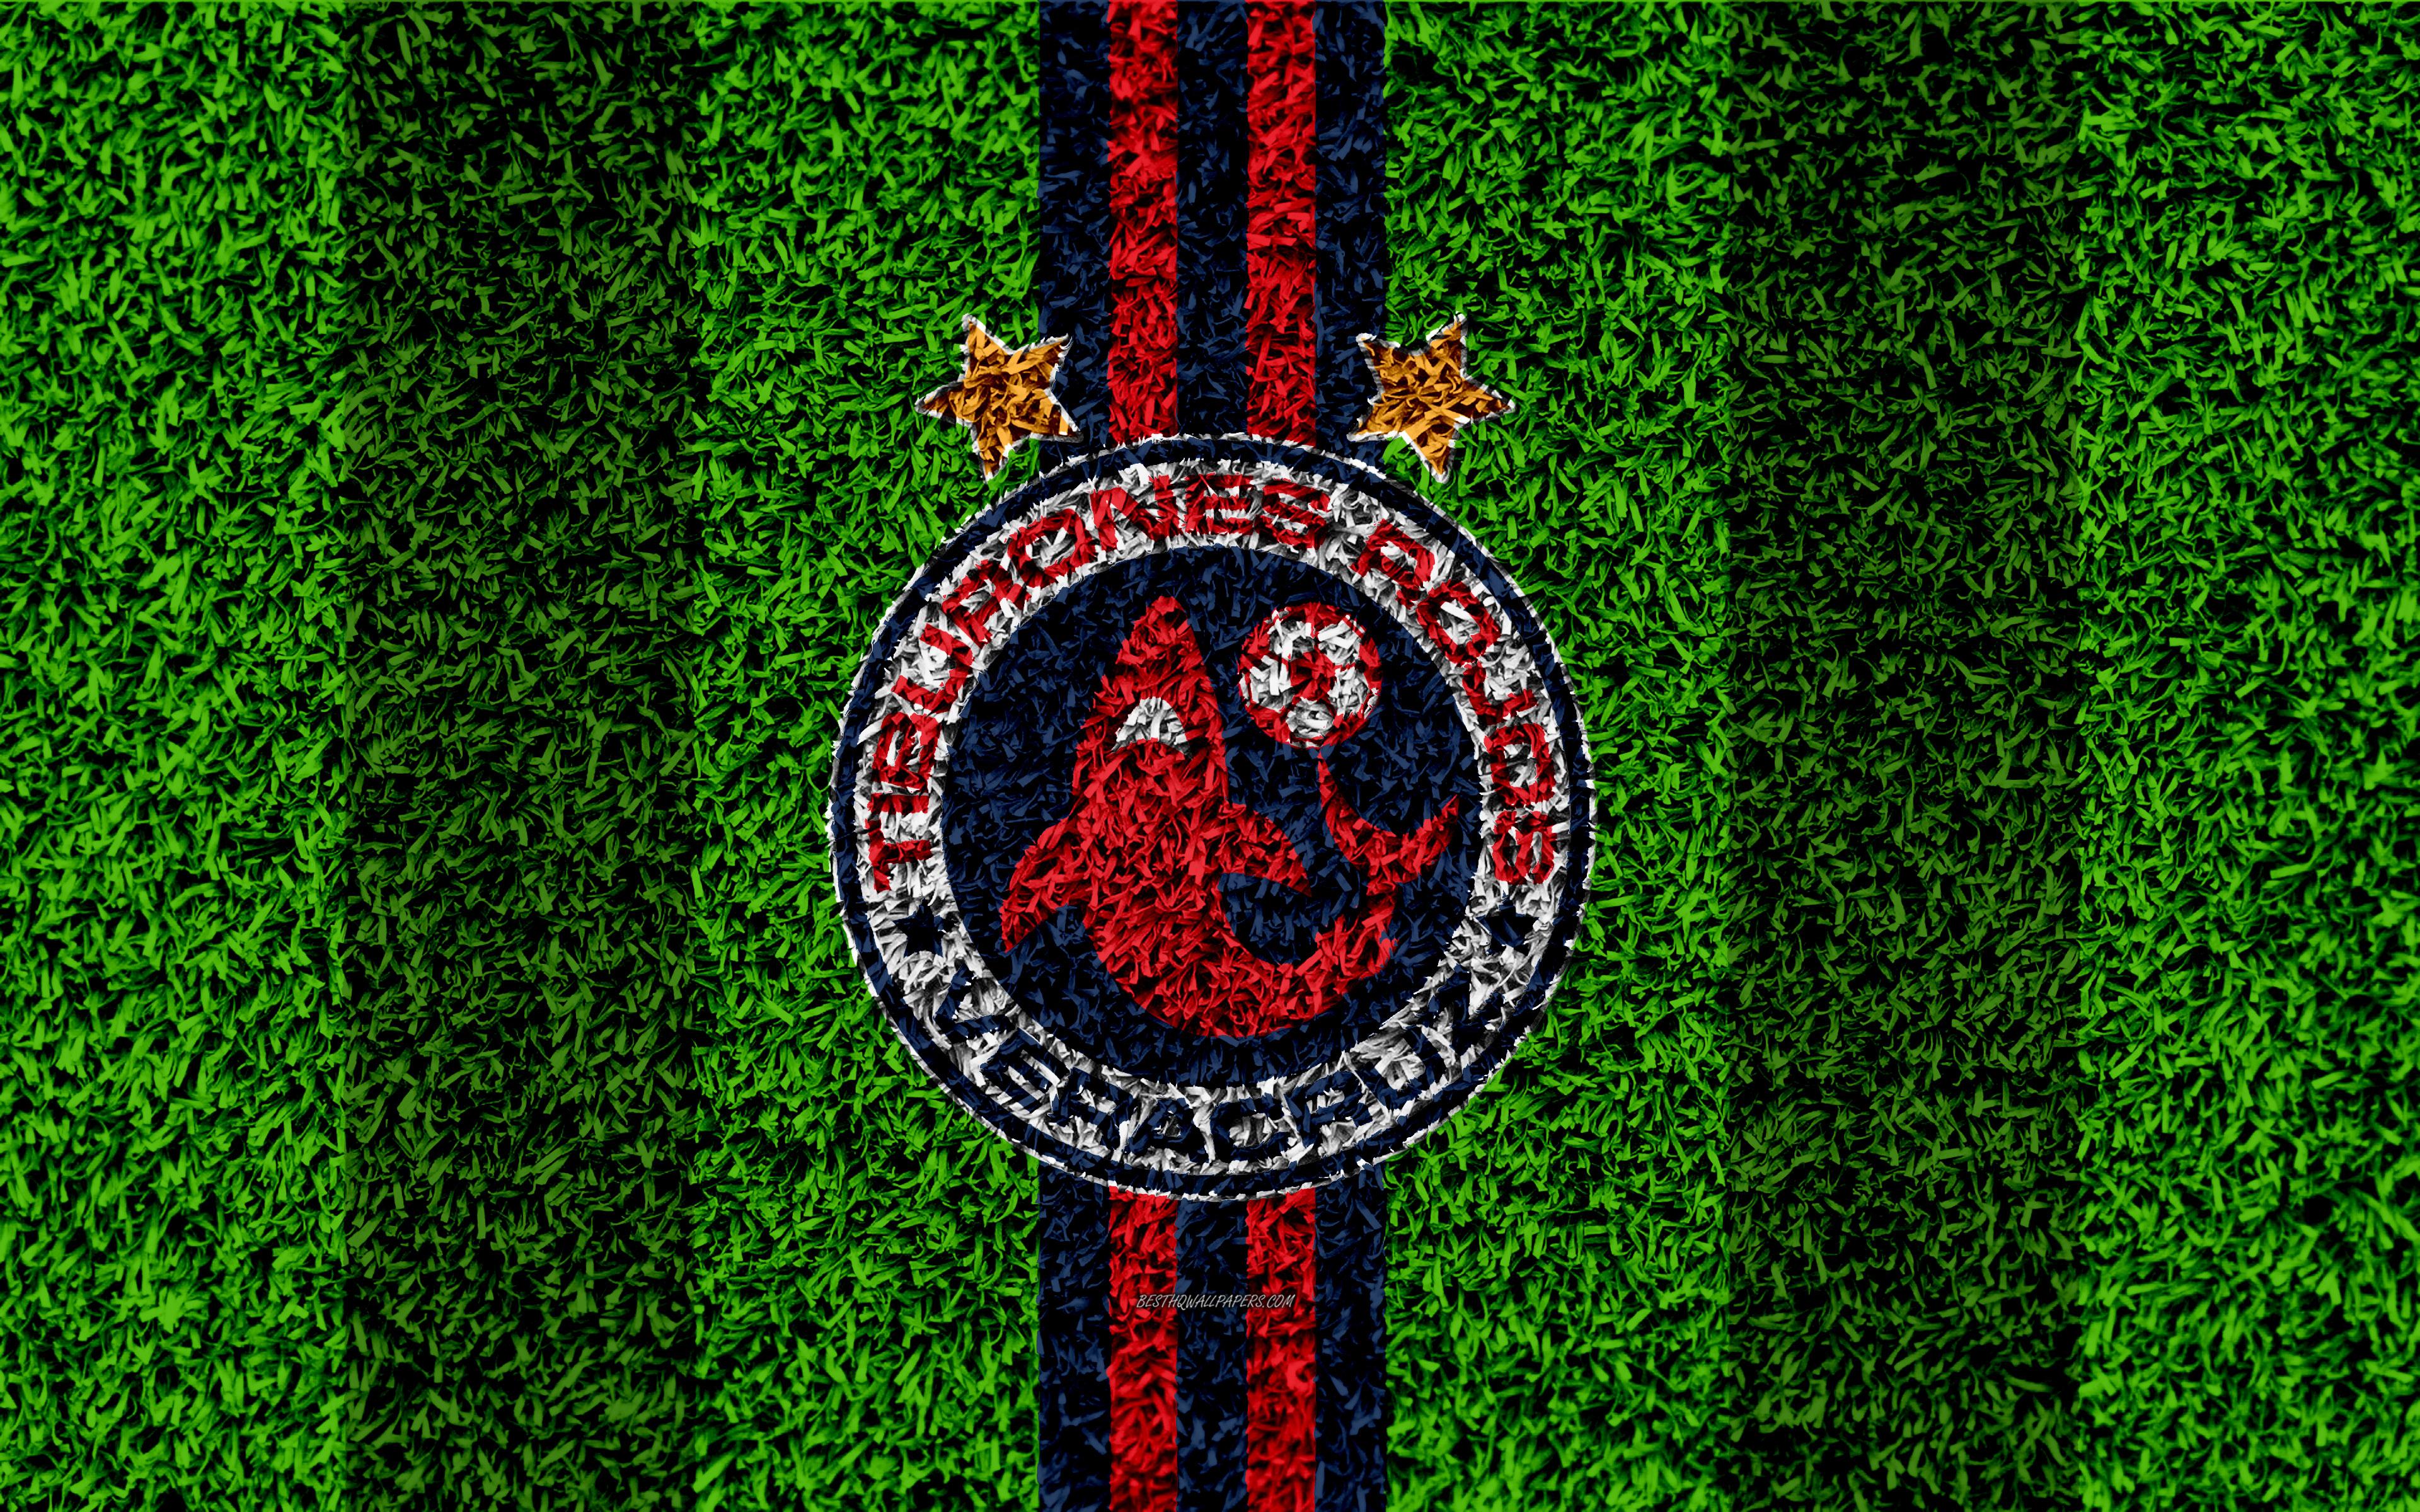 Download wallpaper Veracruz FC, 4k, football lawn, logo, Mexican